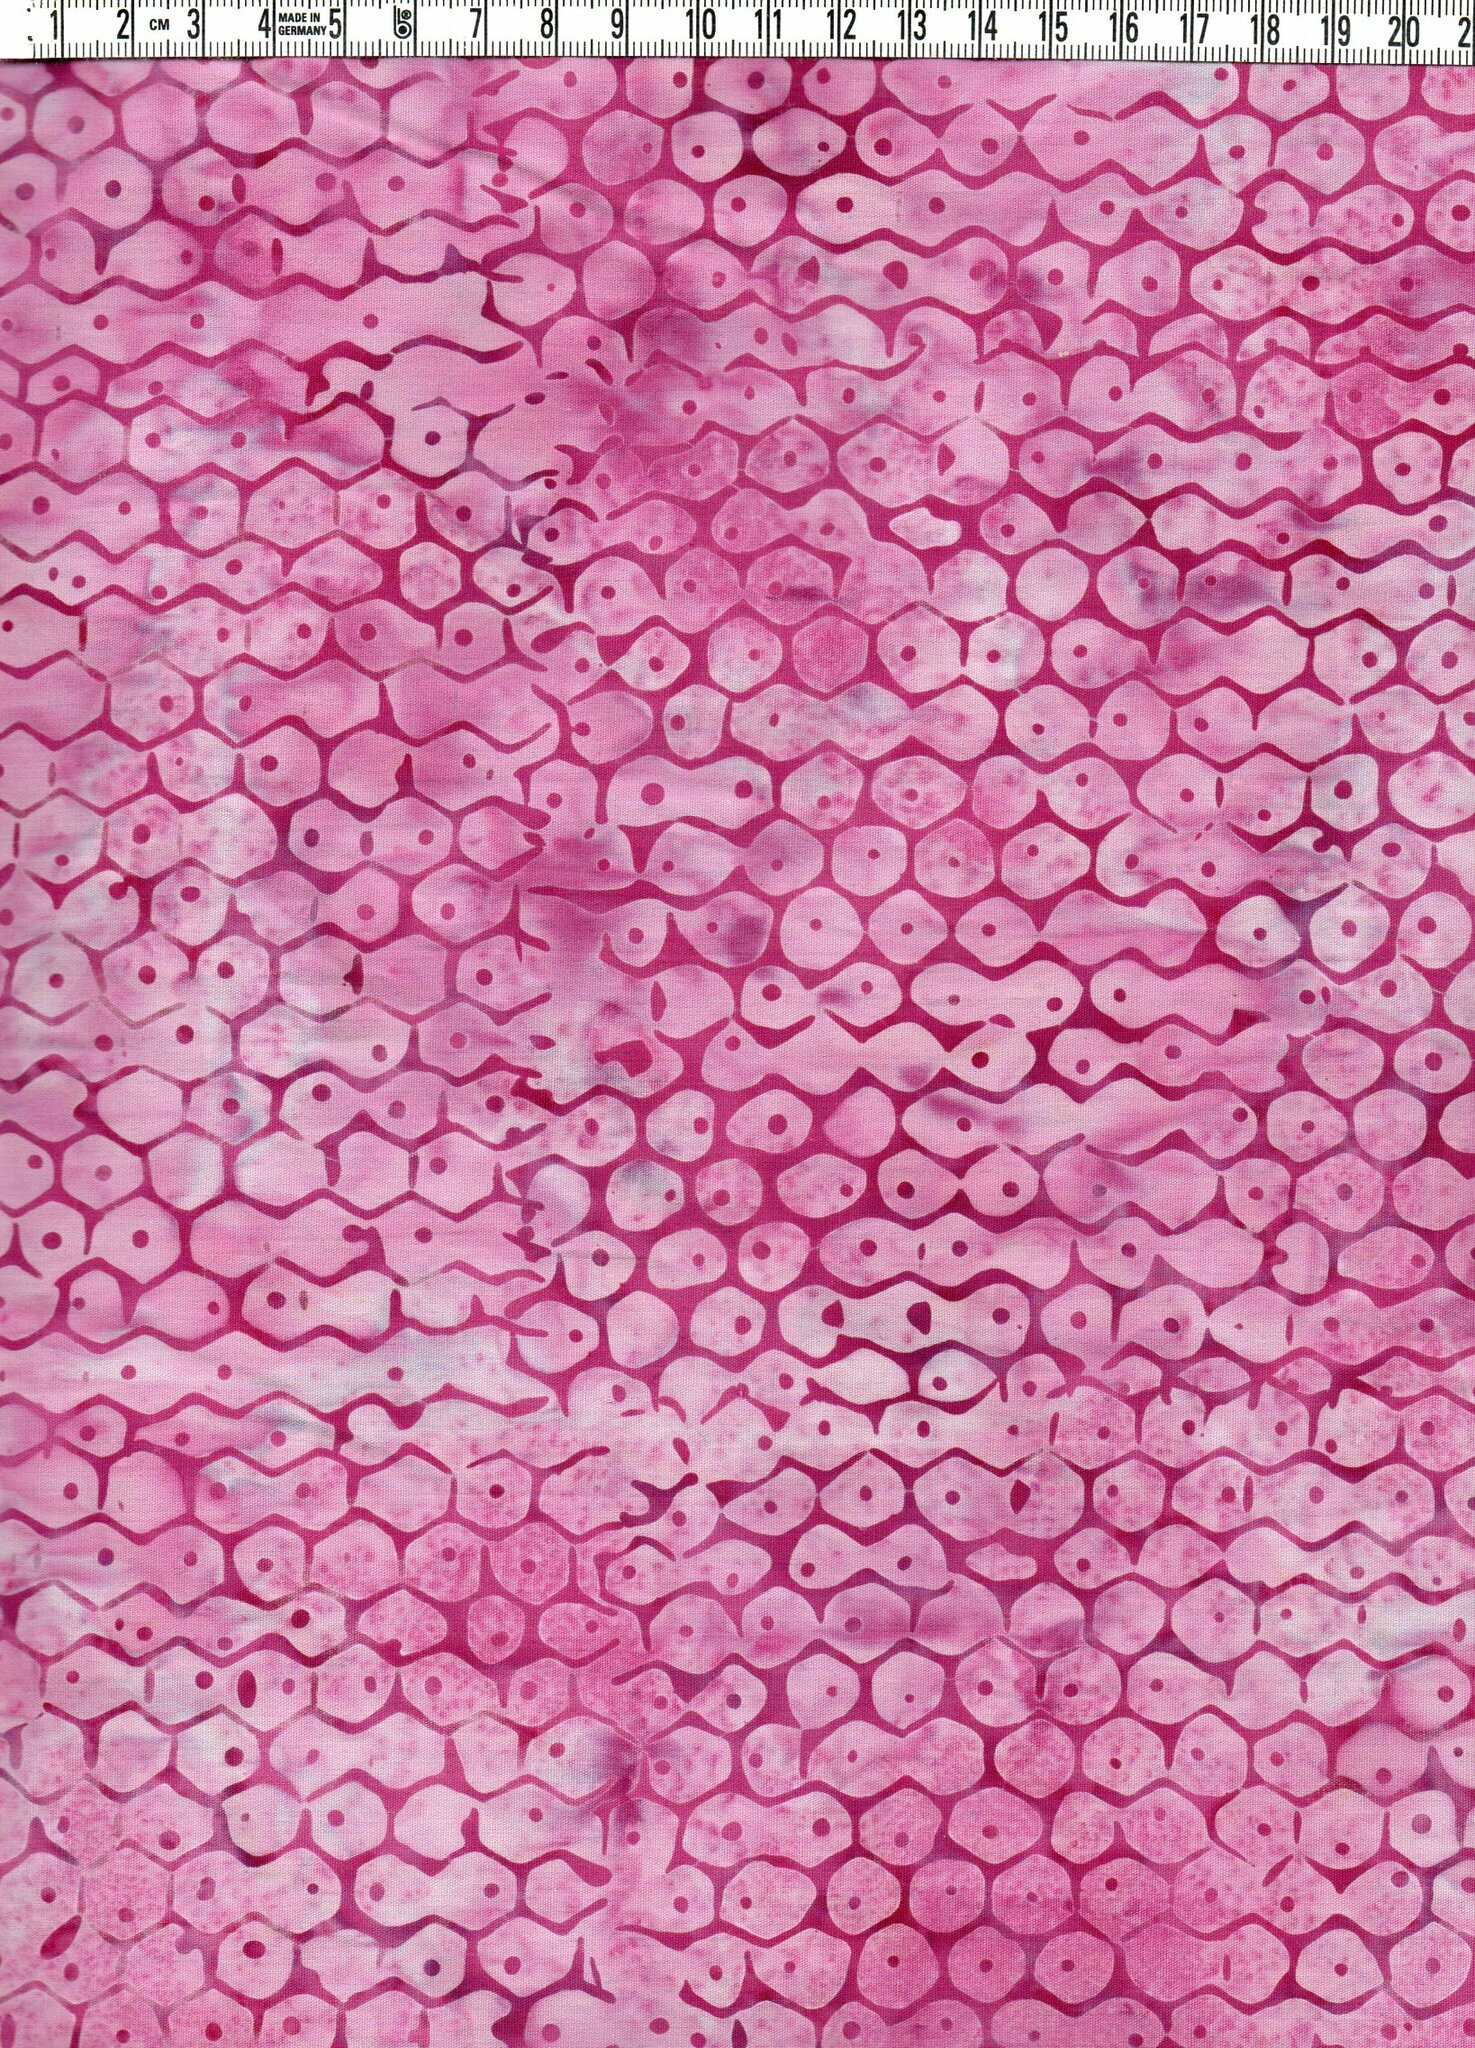 Batiktyg med bikakeinspirerat tryck i rosa toner